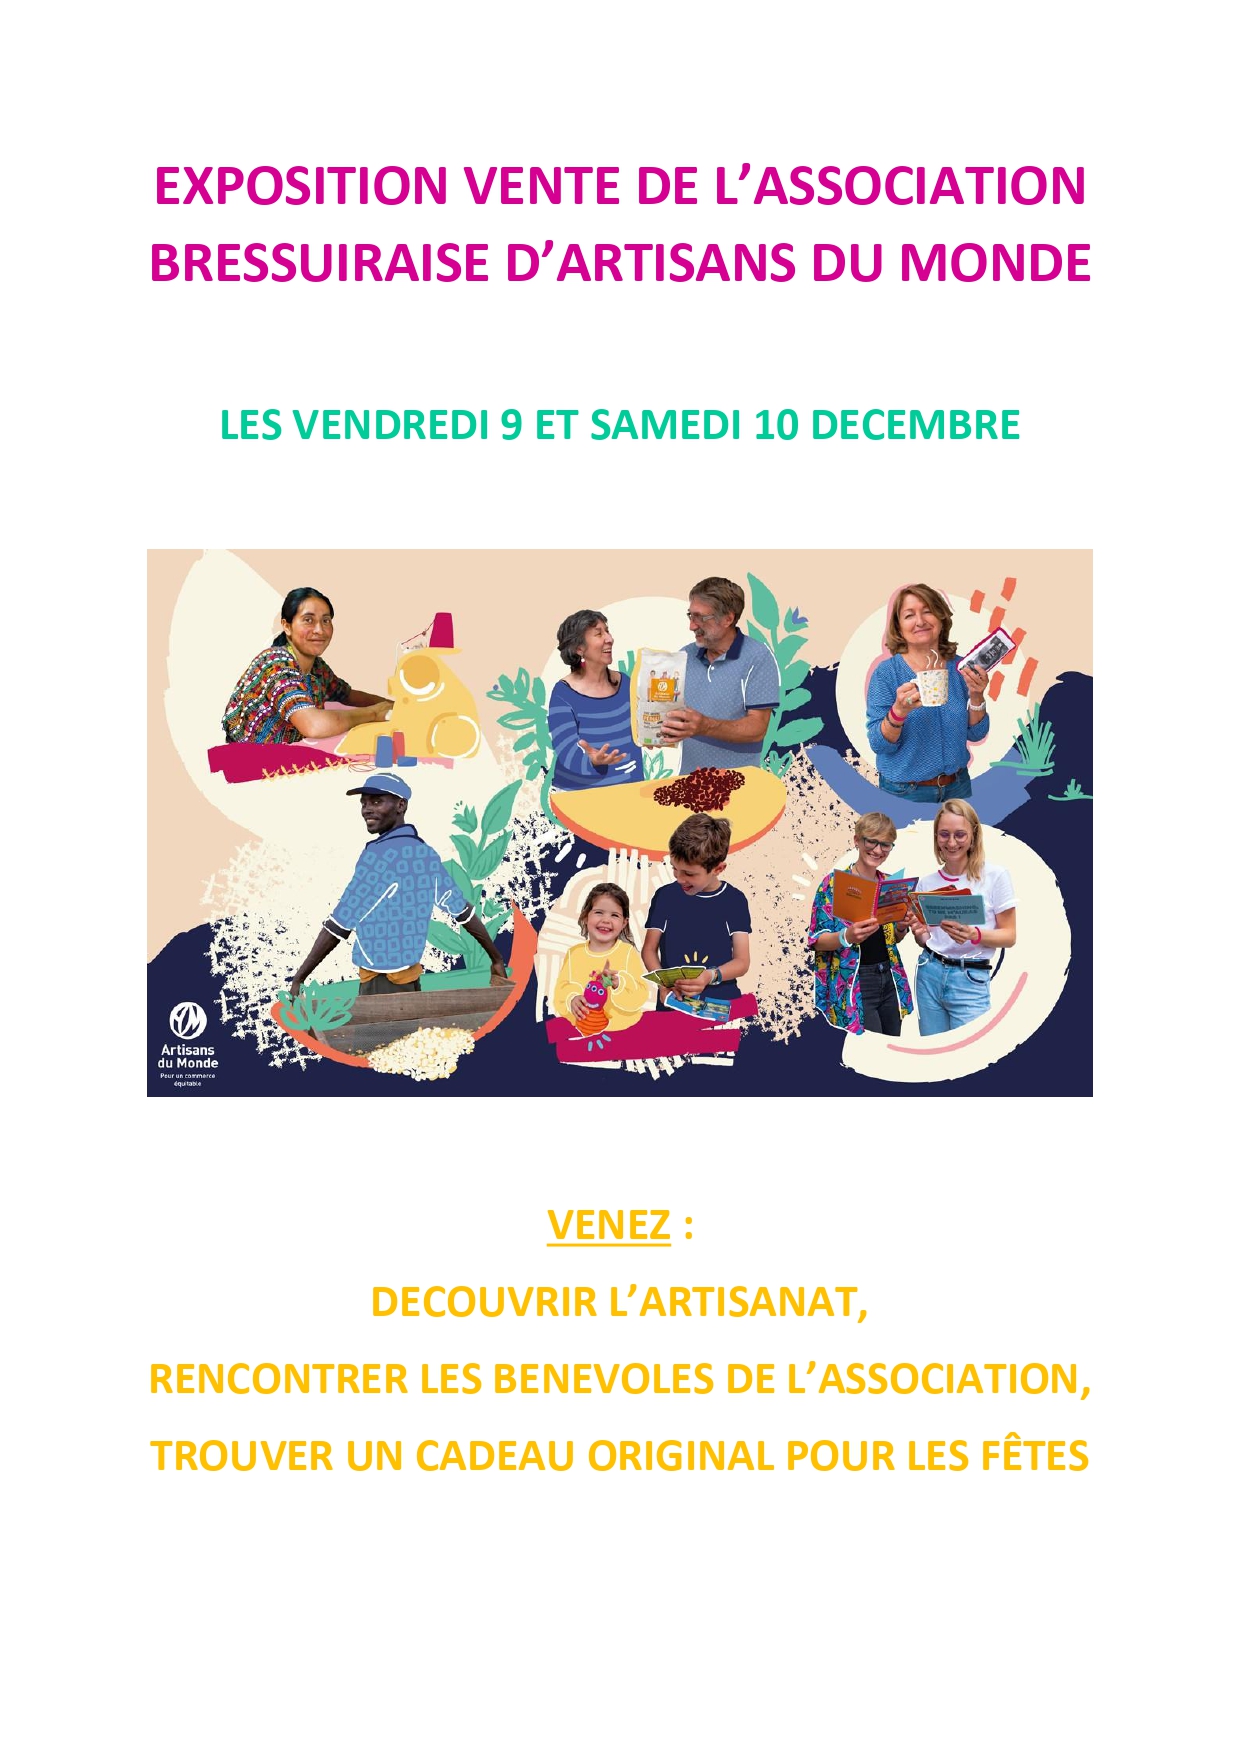 Expo vente Artisanat d'Artisans du Monde Bressuire